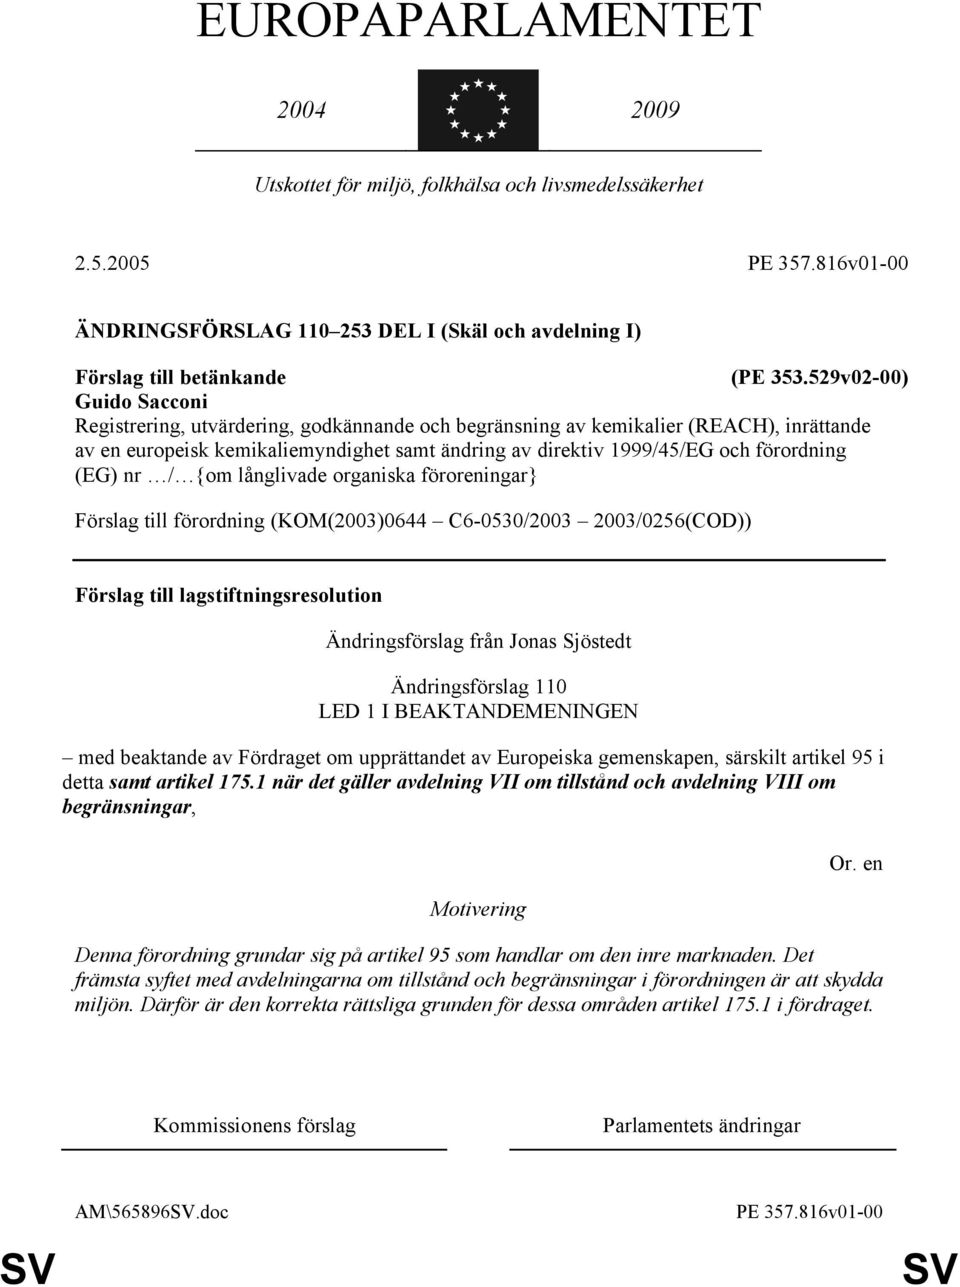 529v02-00) Guido Sacconi Registrering, utvärdering, godkännande och begränsning av kemikalier (REACH), inrättande av en europeisk kemikaliemyndighet samt ändring av direktiv 1999/45/EG och förordning